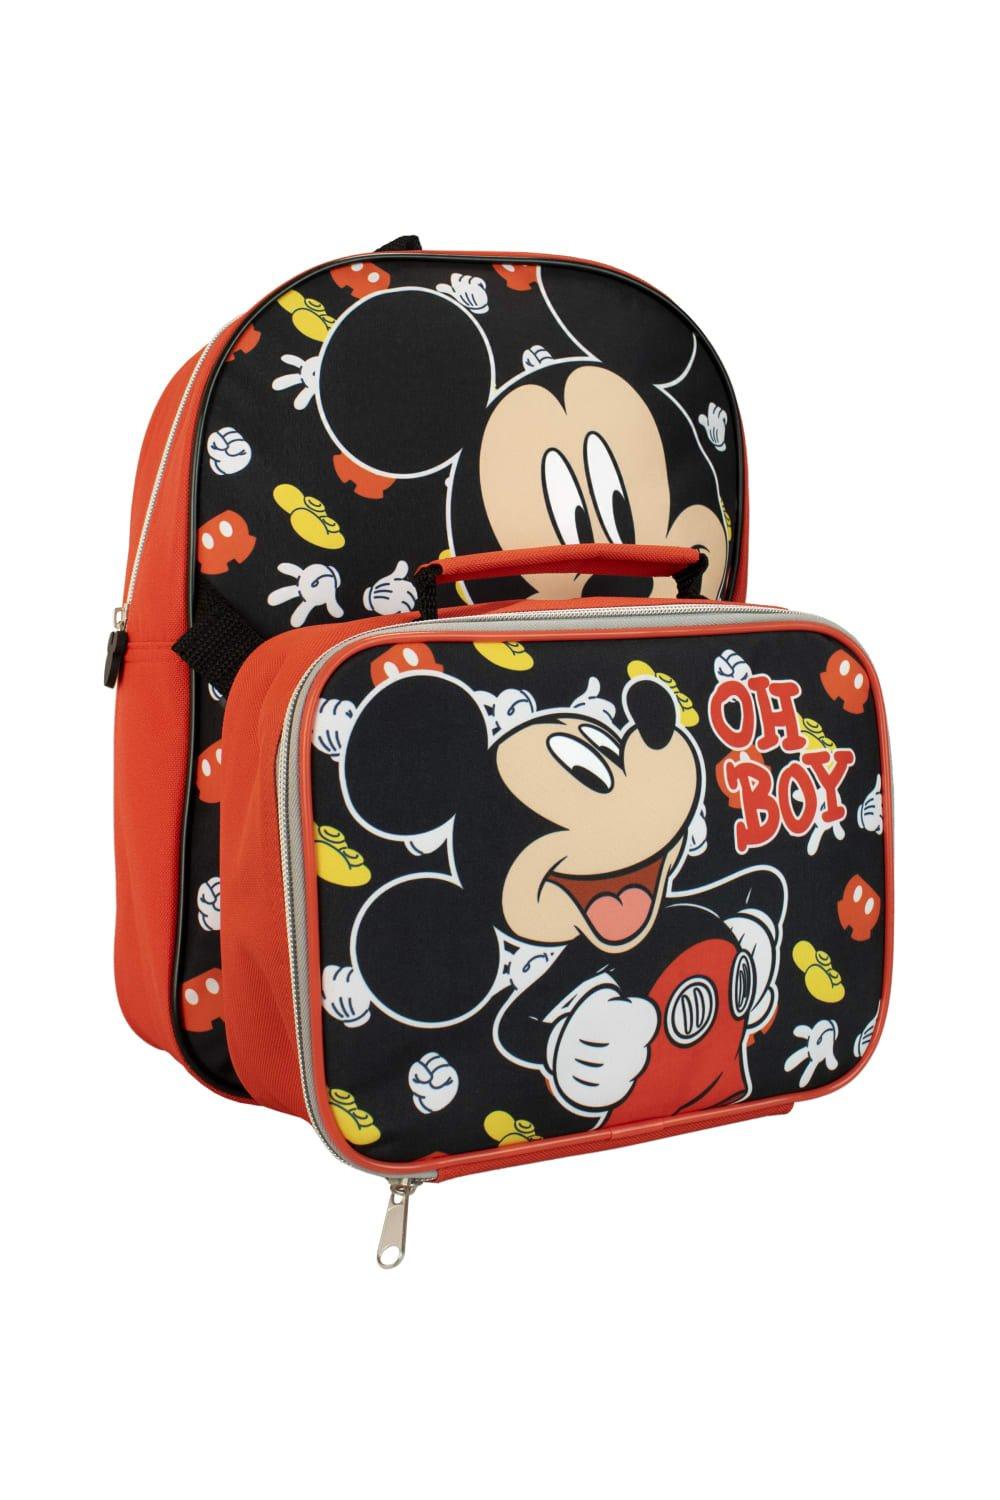 Детский набор: рюкзак и сумка для завтрака с Микки Маусом Disney, черный одиночная распродажа 1 шт пряжка для обуви из пвх с микки маусом аксессуары для обуви с изображением героев диснея подвески для обуви укр